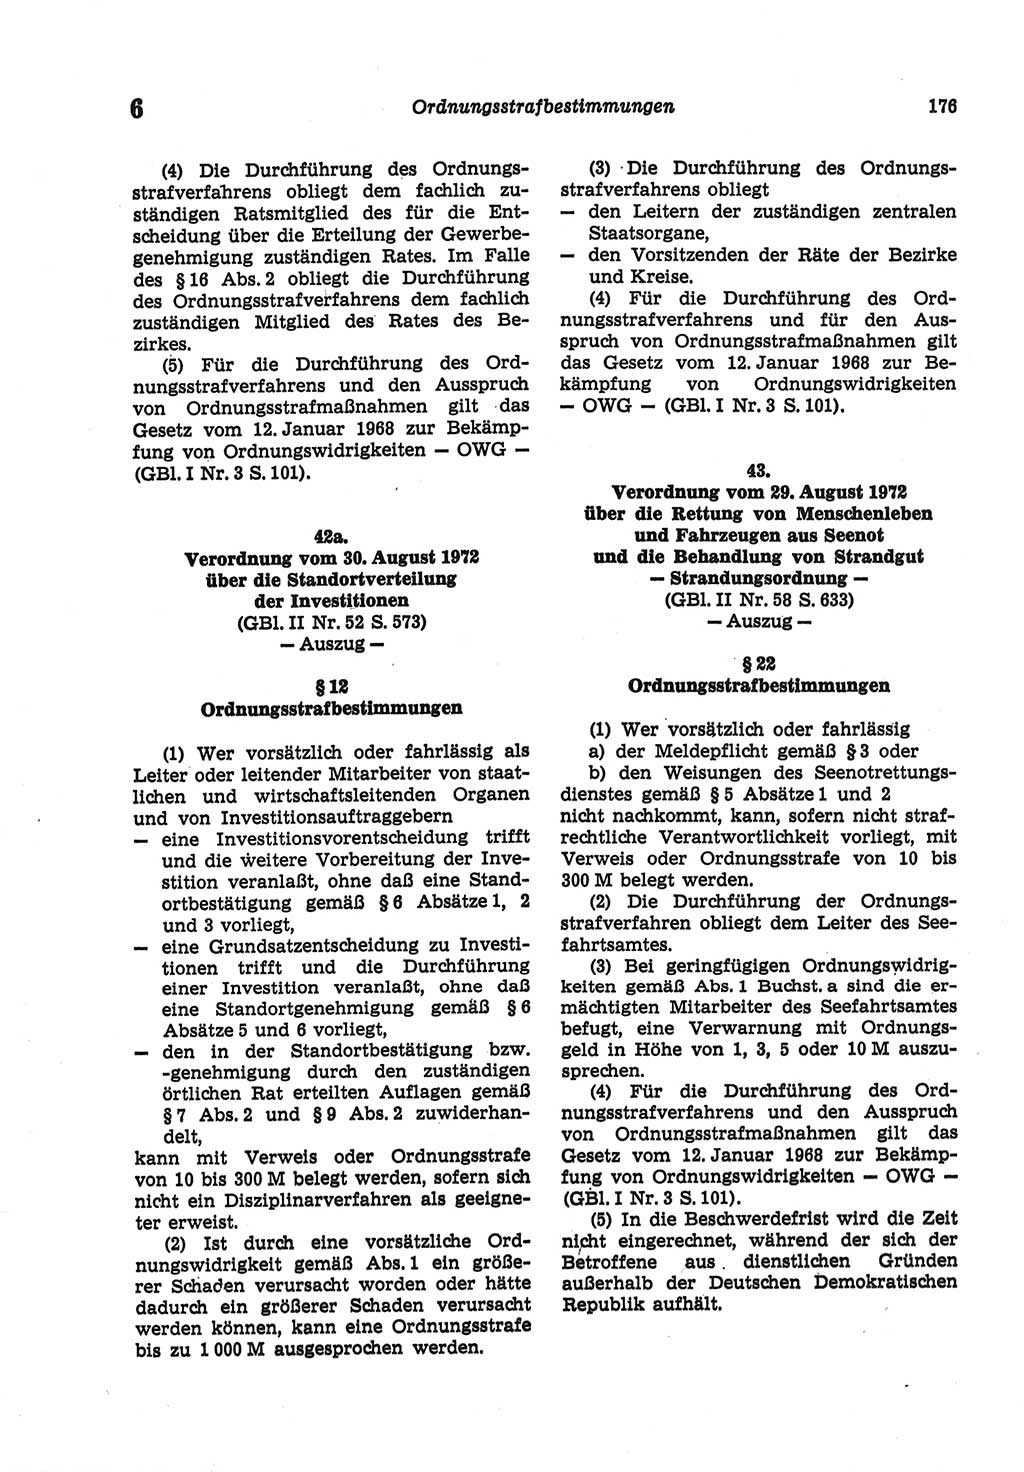 Strafgesetzbuch (StGB) der Deutschen Demokratischen Republik (DDR) und angrenzende Gesetze und Bestimmungen 1977, Seite 176 (StGB DDR Ges. Best. 1977, S. 176)